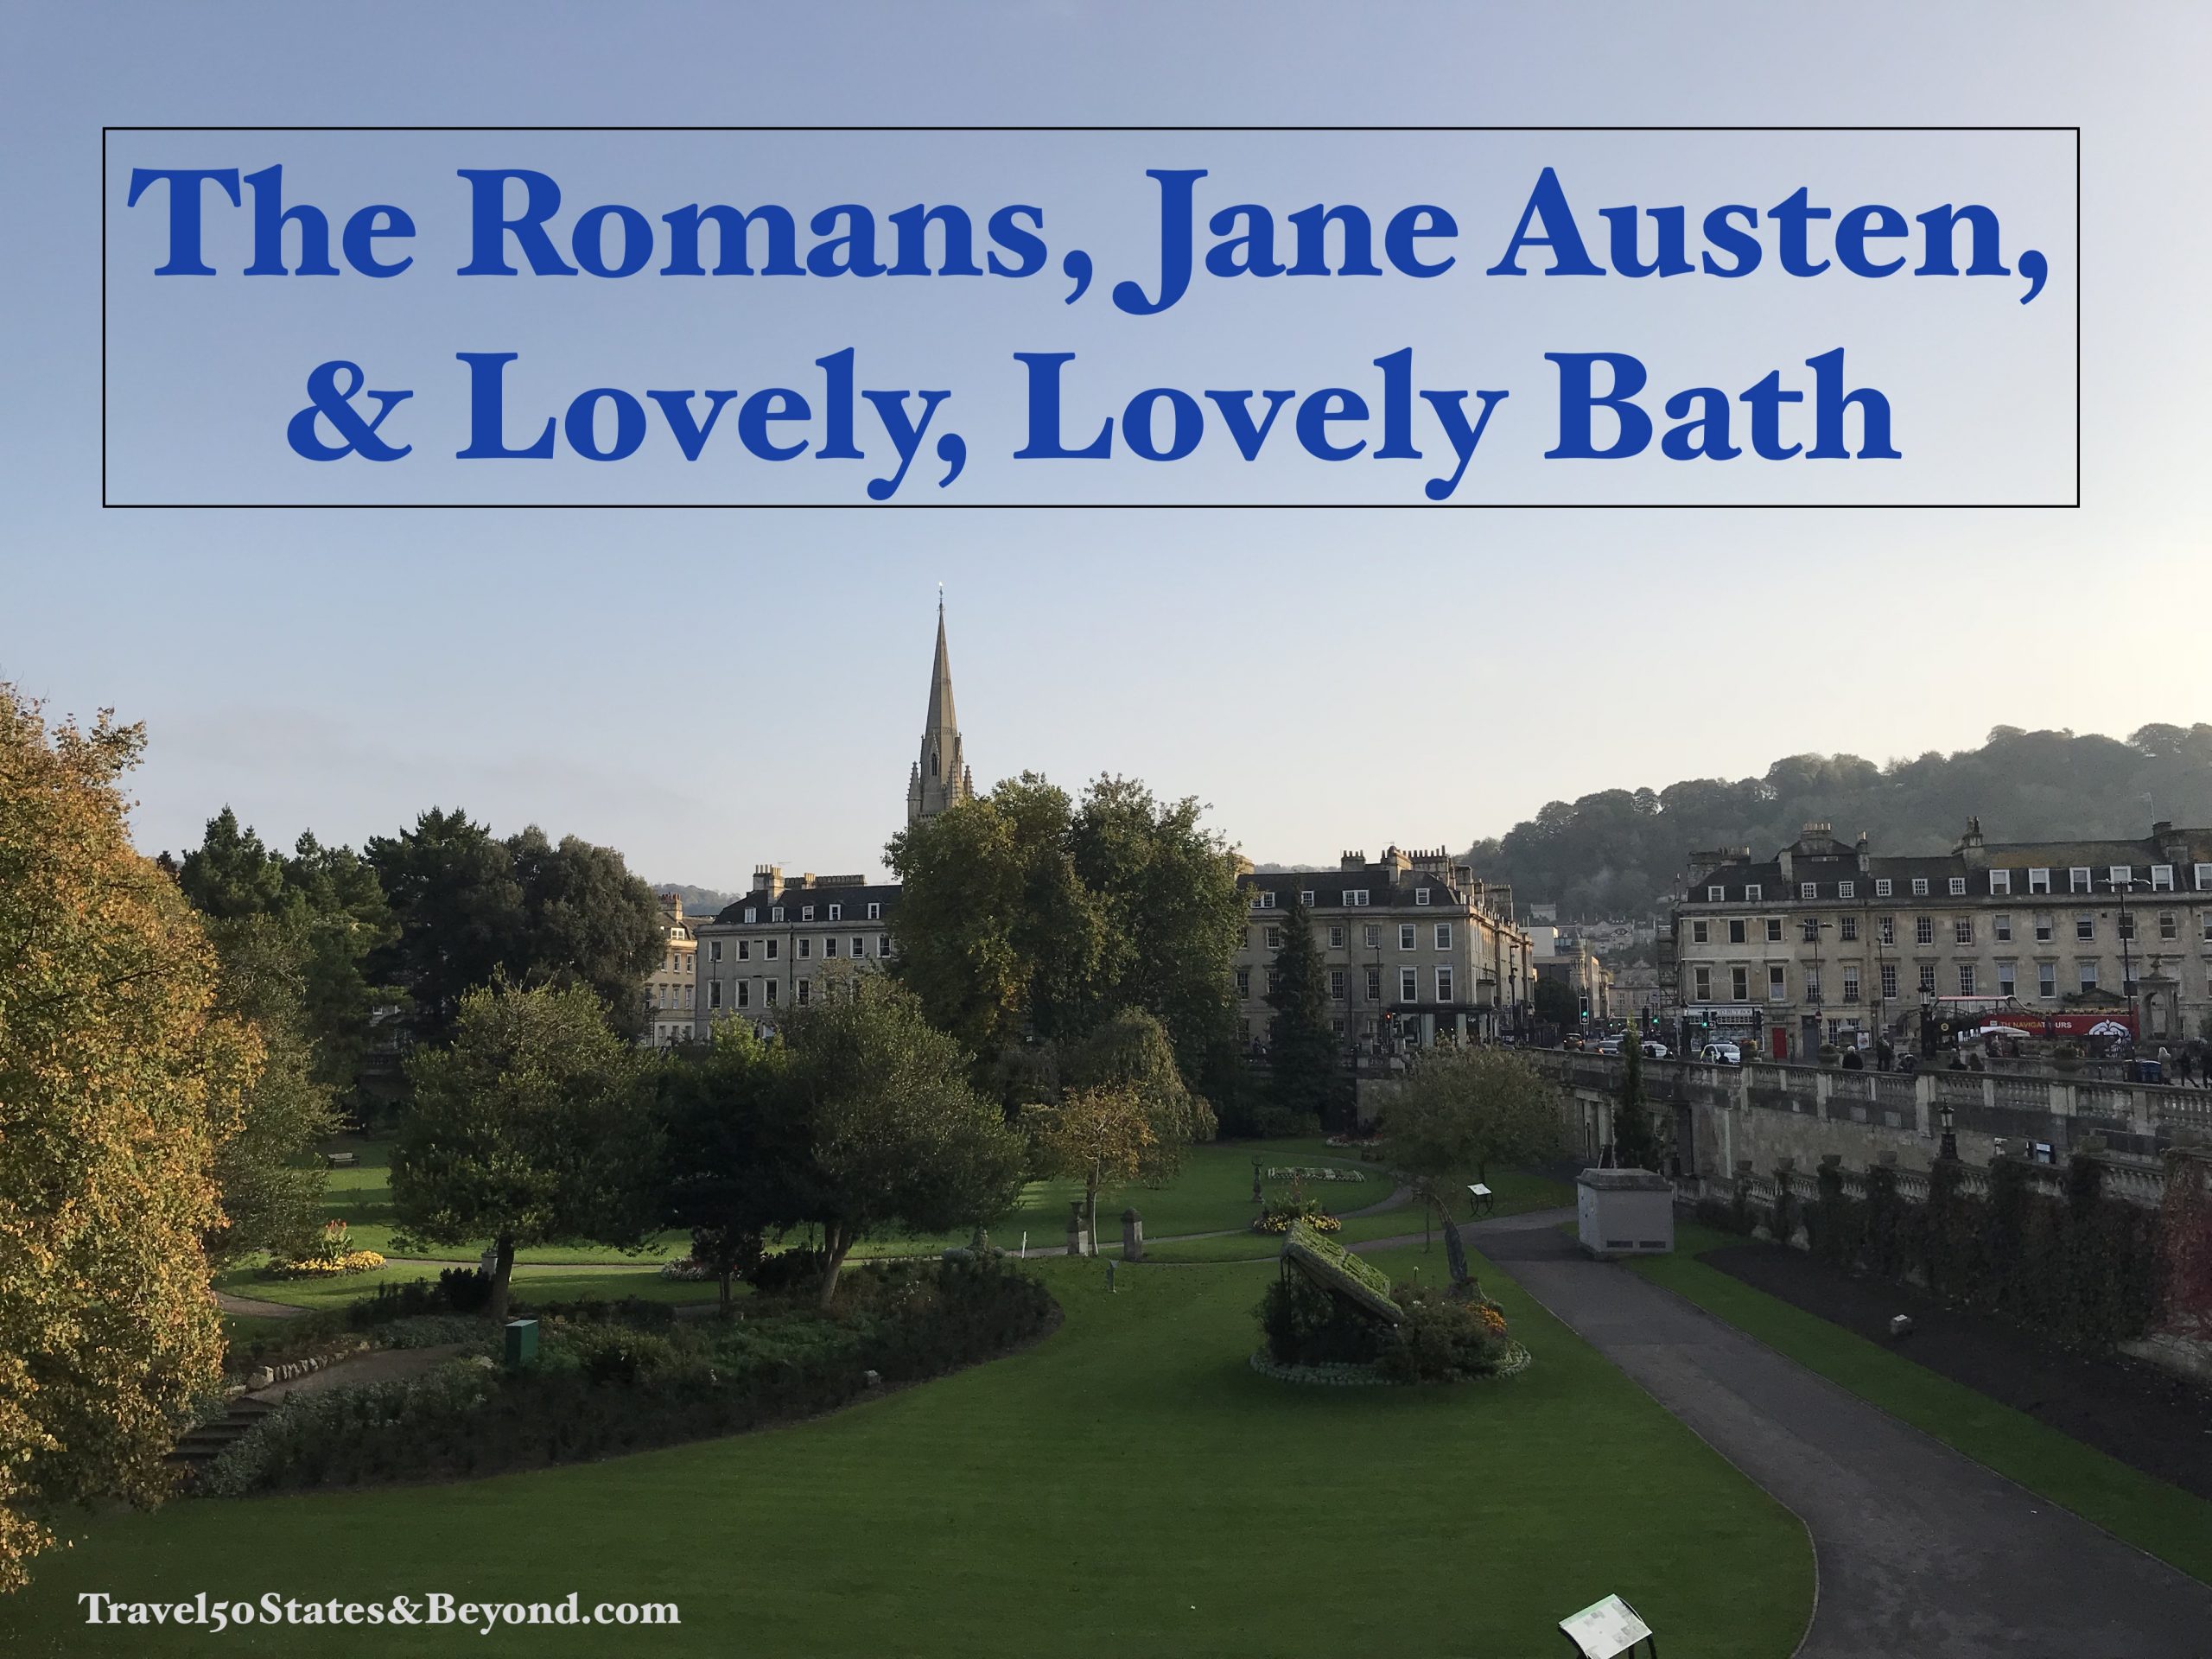 The Romans, Jane Austen, & Lovely, Lovely Bath